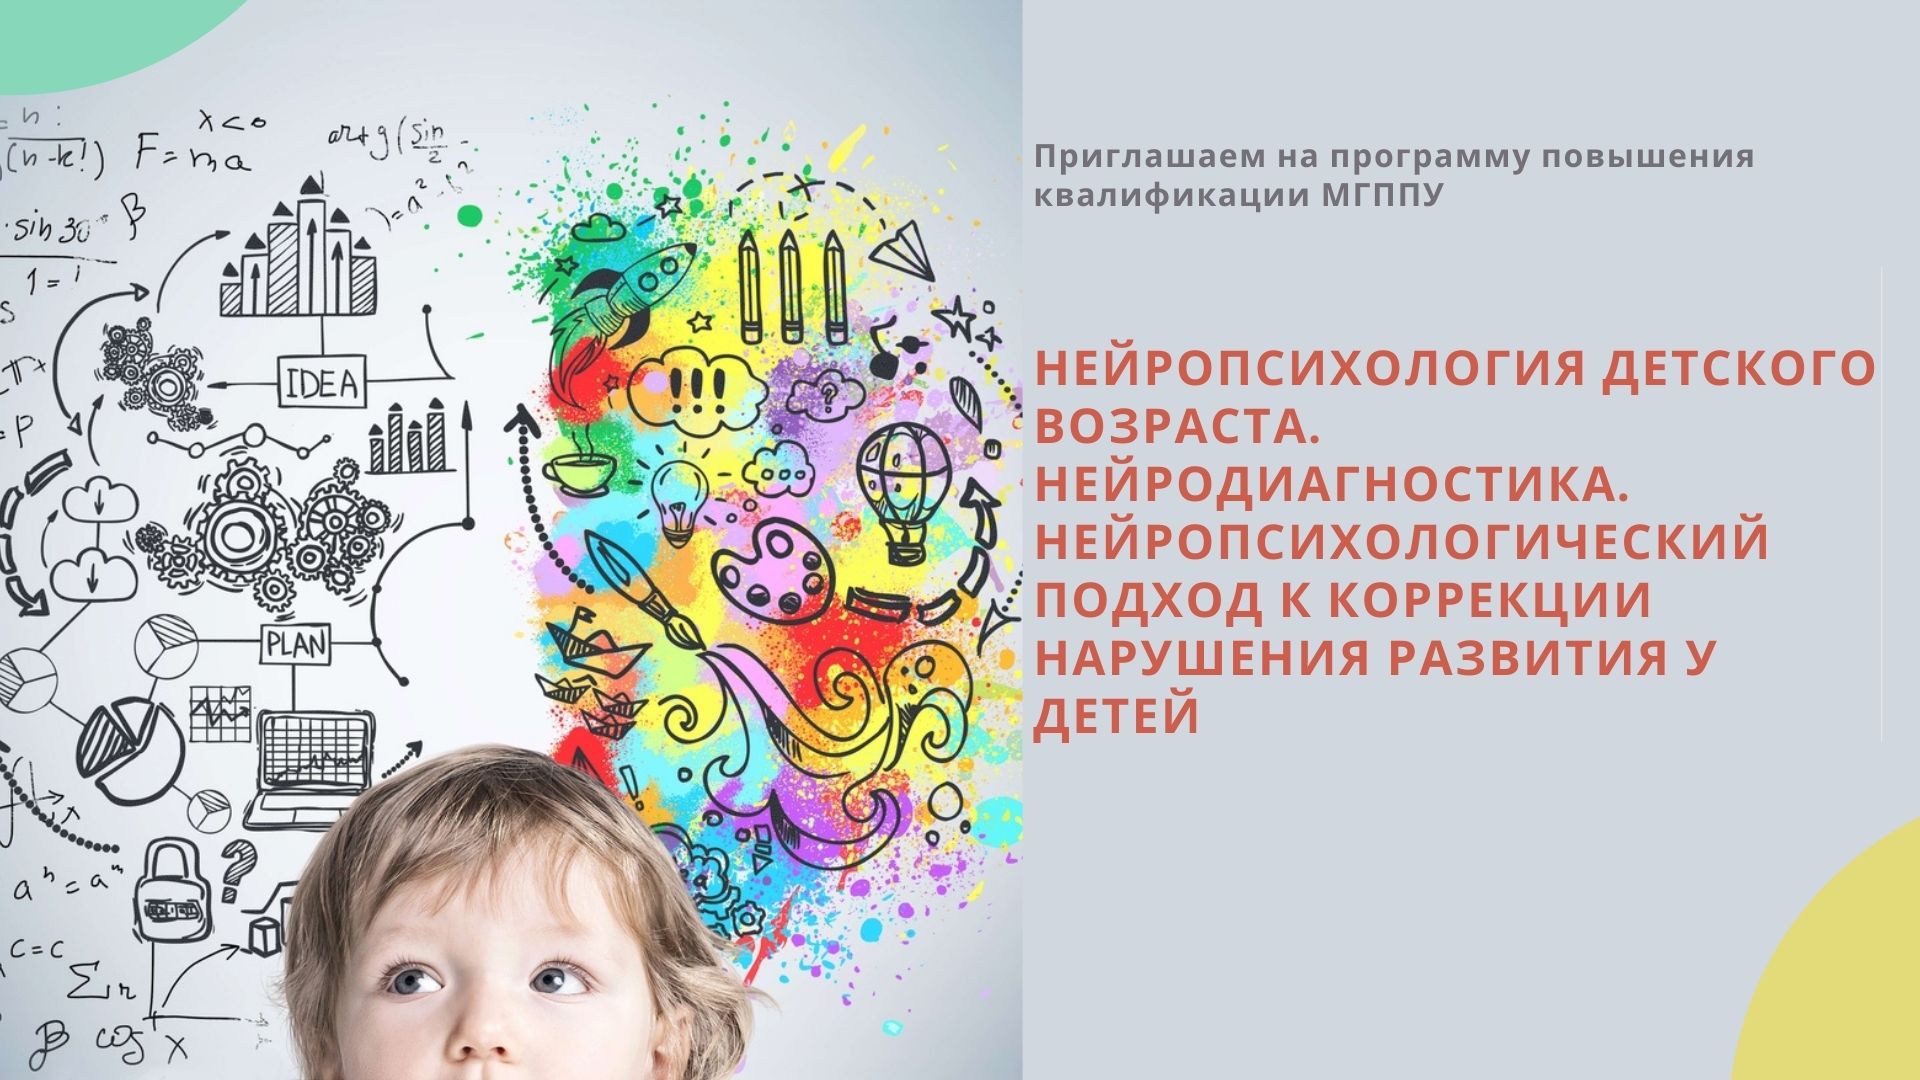 Нейропсихология детского возраста. Нейродиагностика» и «Нейропсихологический подход к коррекции нарушения развития у детей